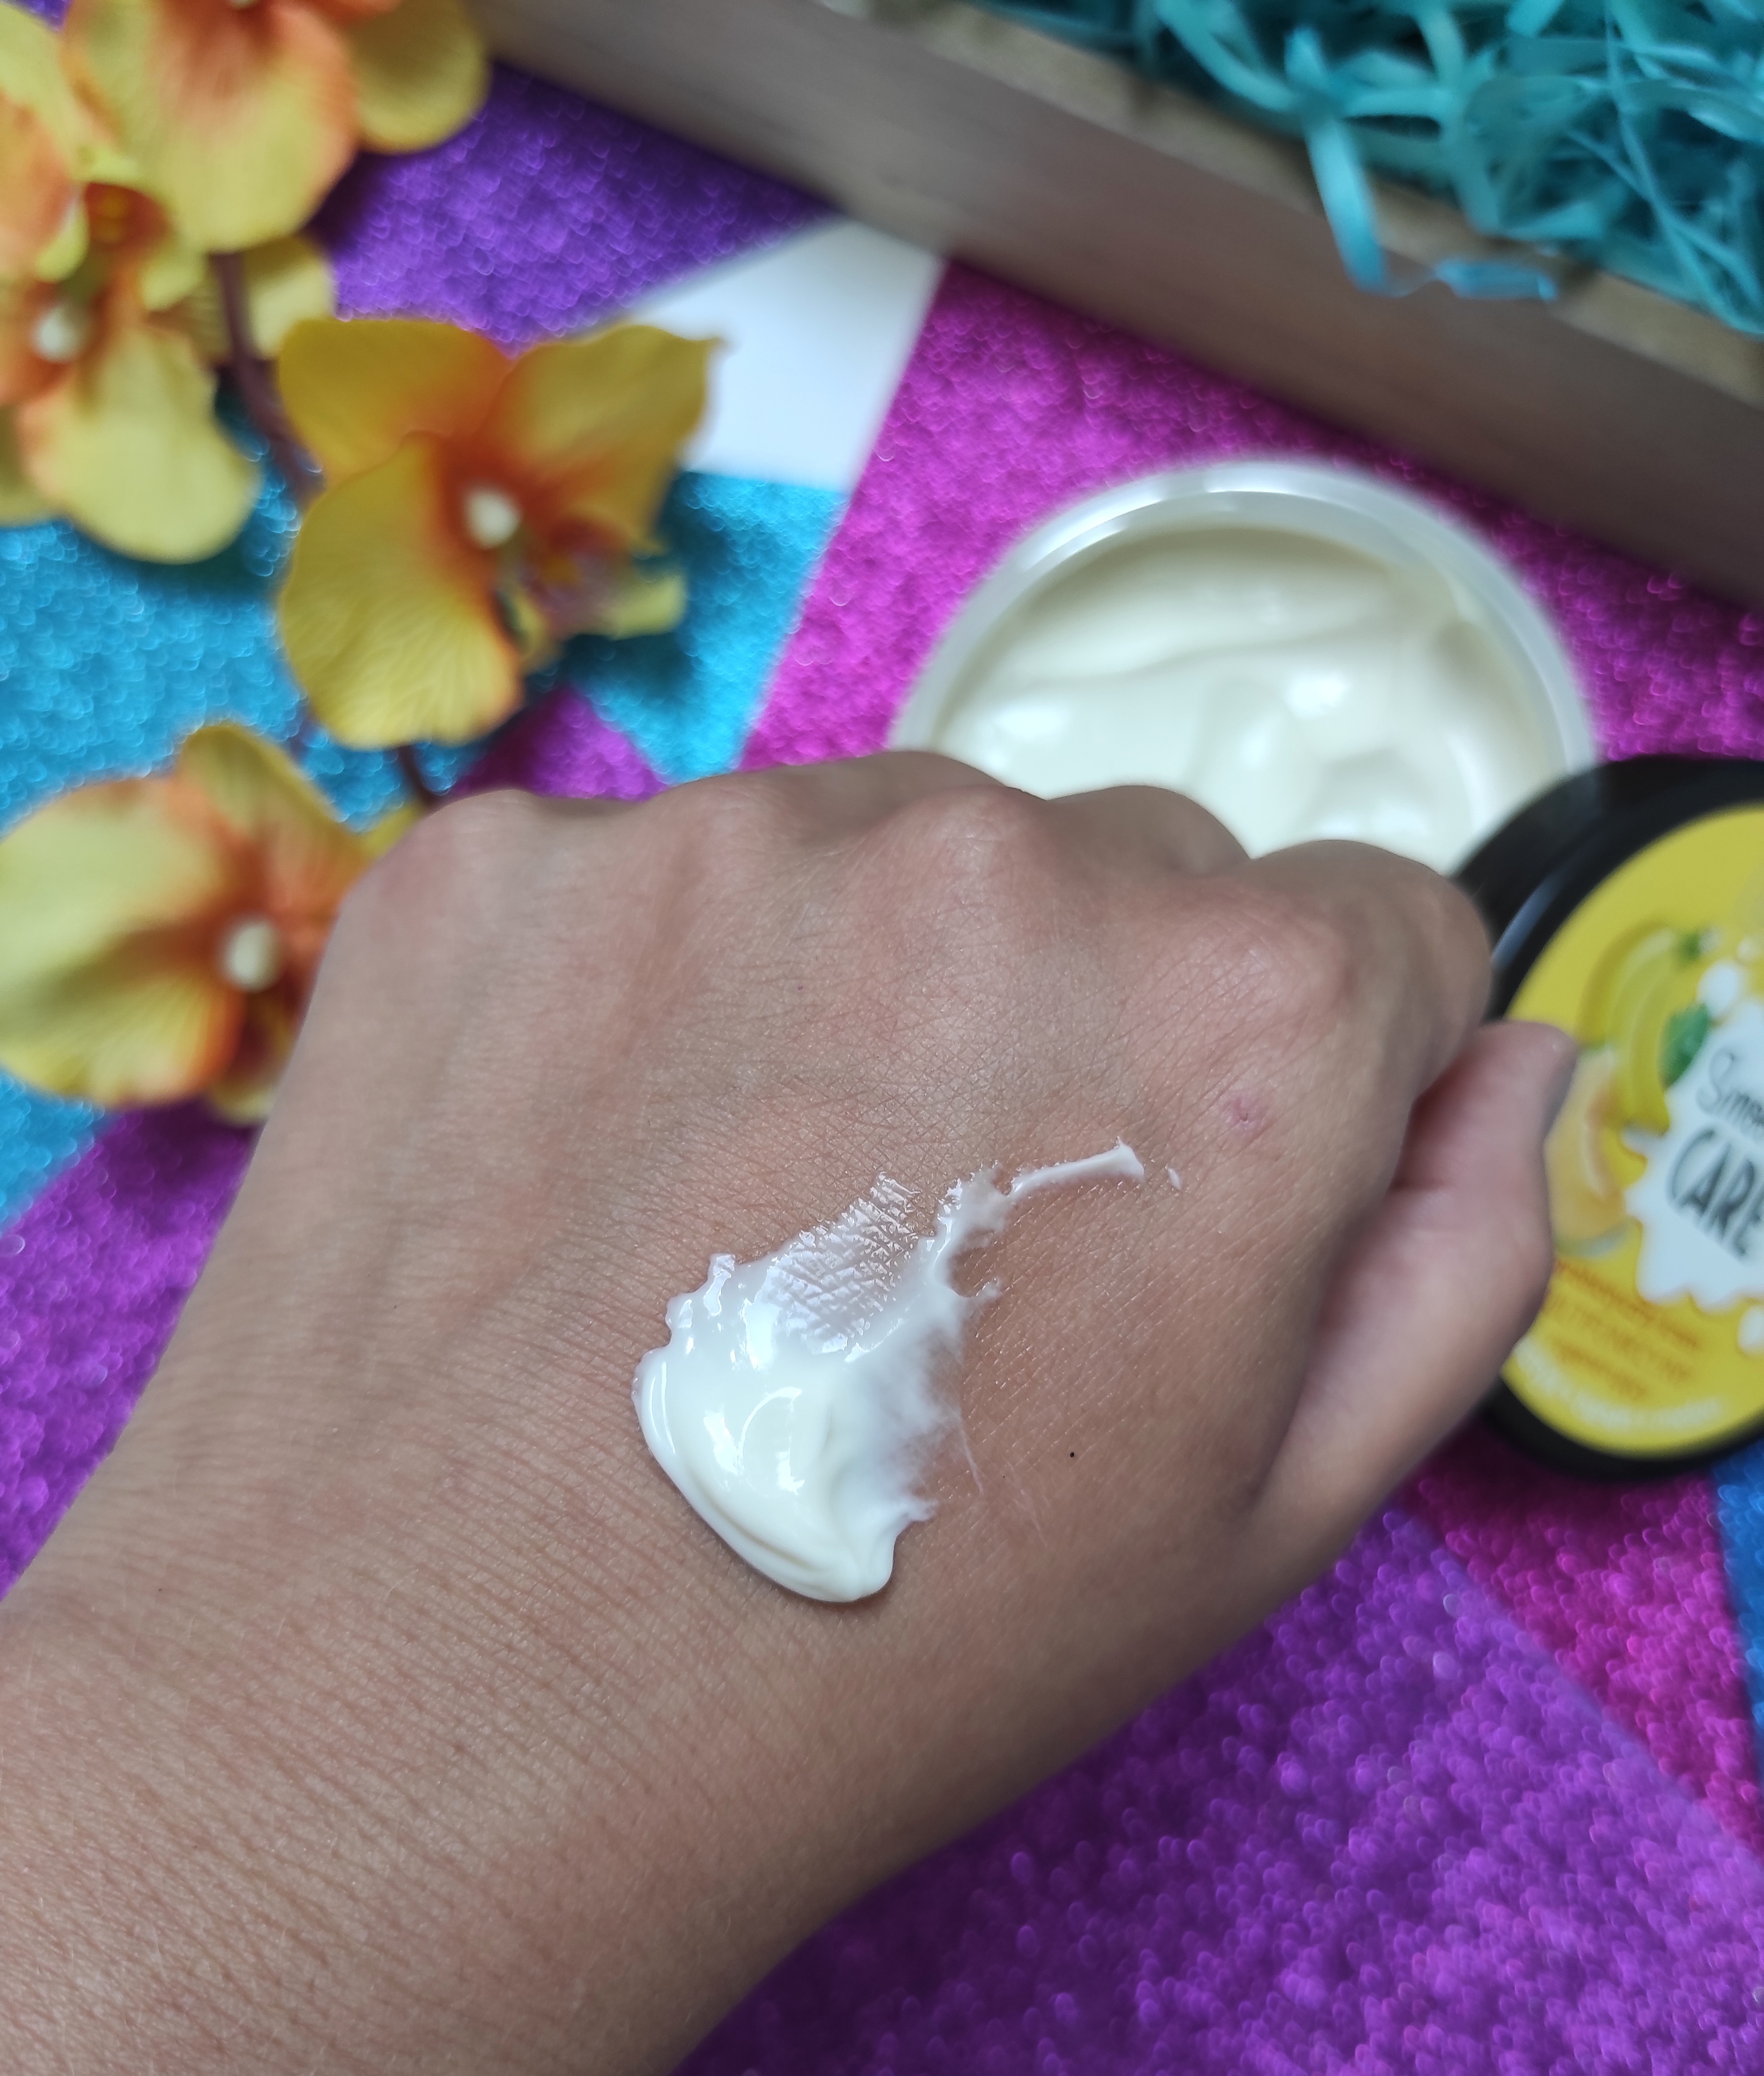 Smoothie Care prebiotyczny krem miltifunkcyjny regenerujący do twarzy, ciała i dłoni Bielenda - Pure Beauty